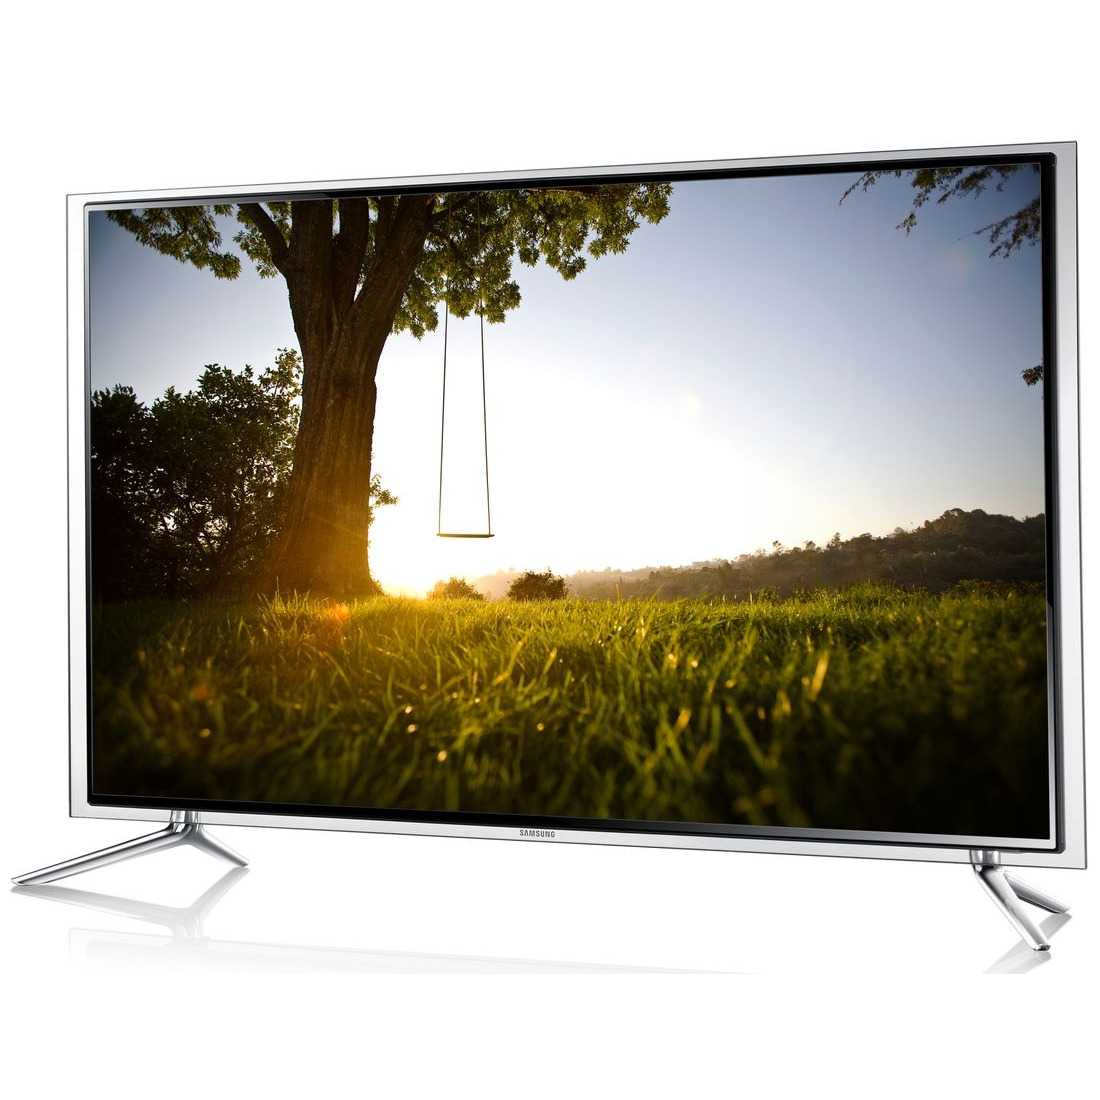 Телевизор Samsung UE46F6510 - подробные характеристики обзоры видео фото Цены в интернет-магазинах где можно купить телевизор Samsung UE46F6510